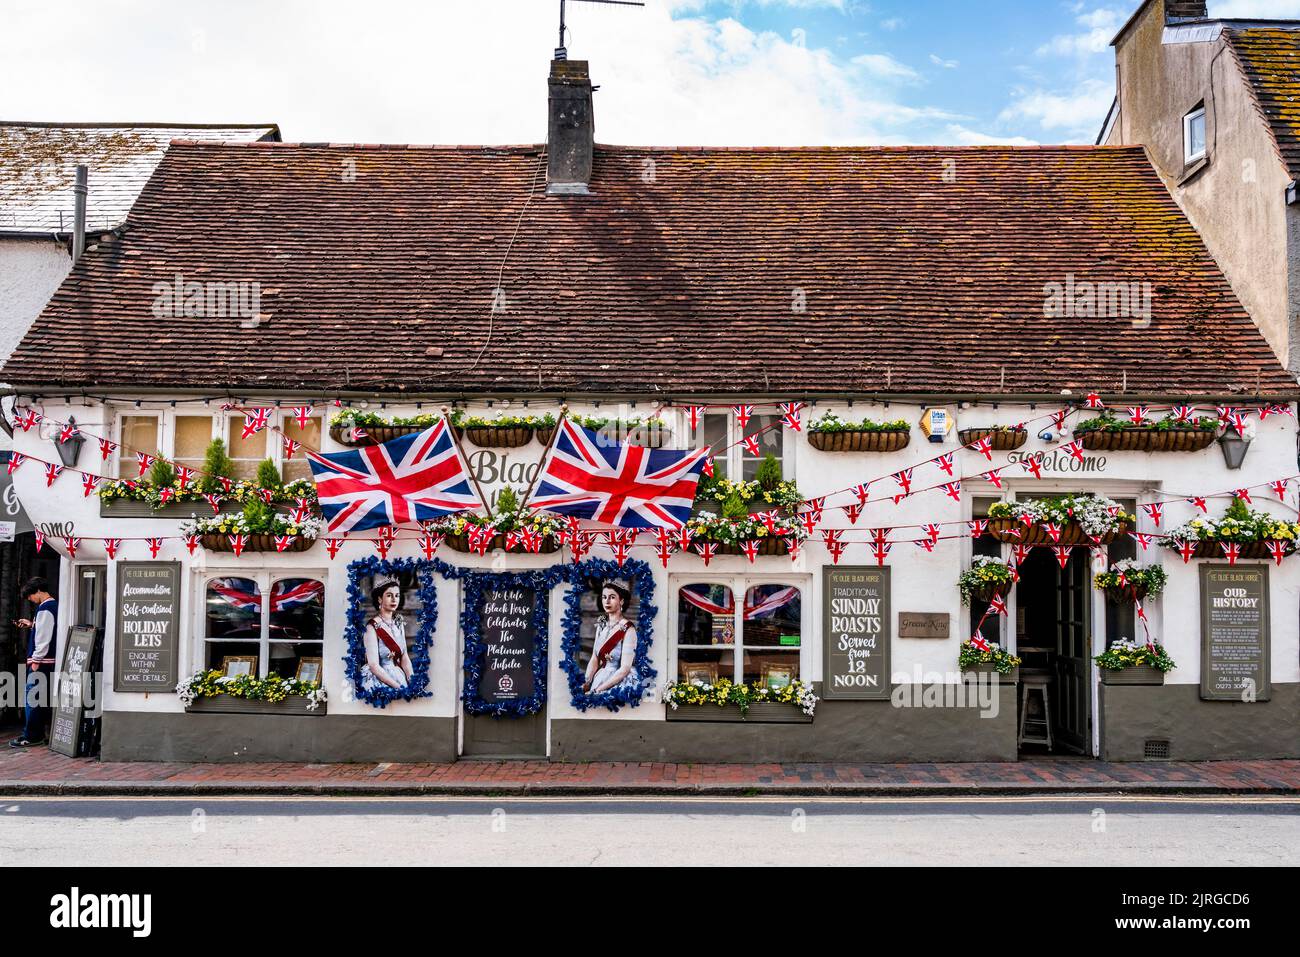 Flaggen und Porträts der Königin schmücken die Vorderseite des Black Horse Pub während der Queen's Platinum Jubilee Celebrations, Rottingdean, Sussex, Großbritannien. Stockfoto